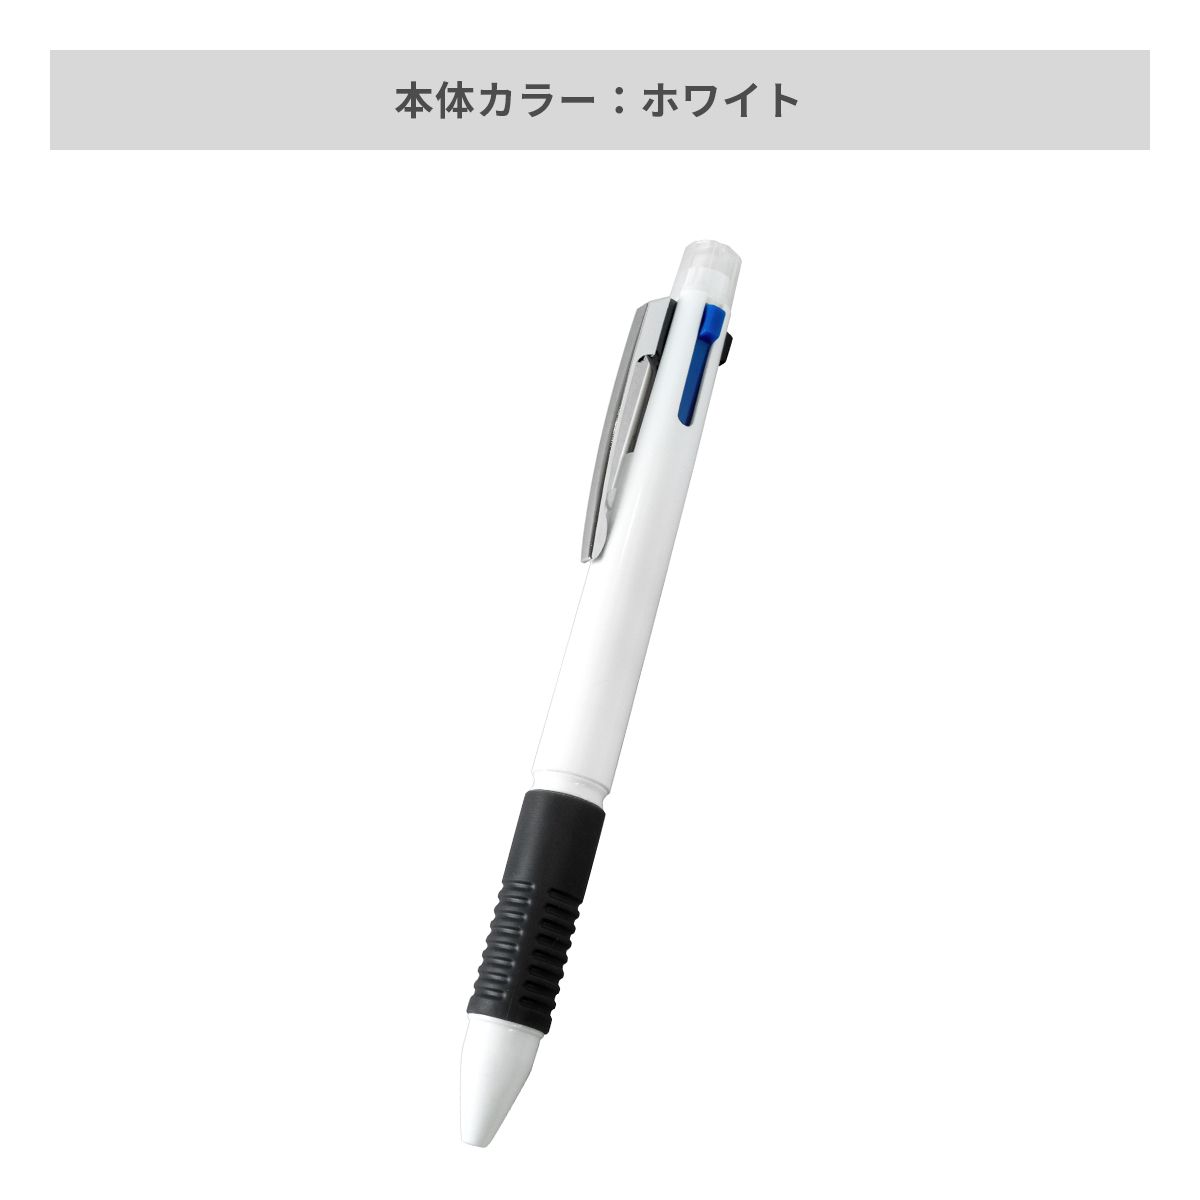 マルチ4ファンクションペン【多機能ペン / パッド印刷】 画像4